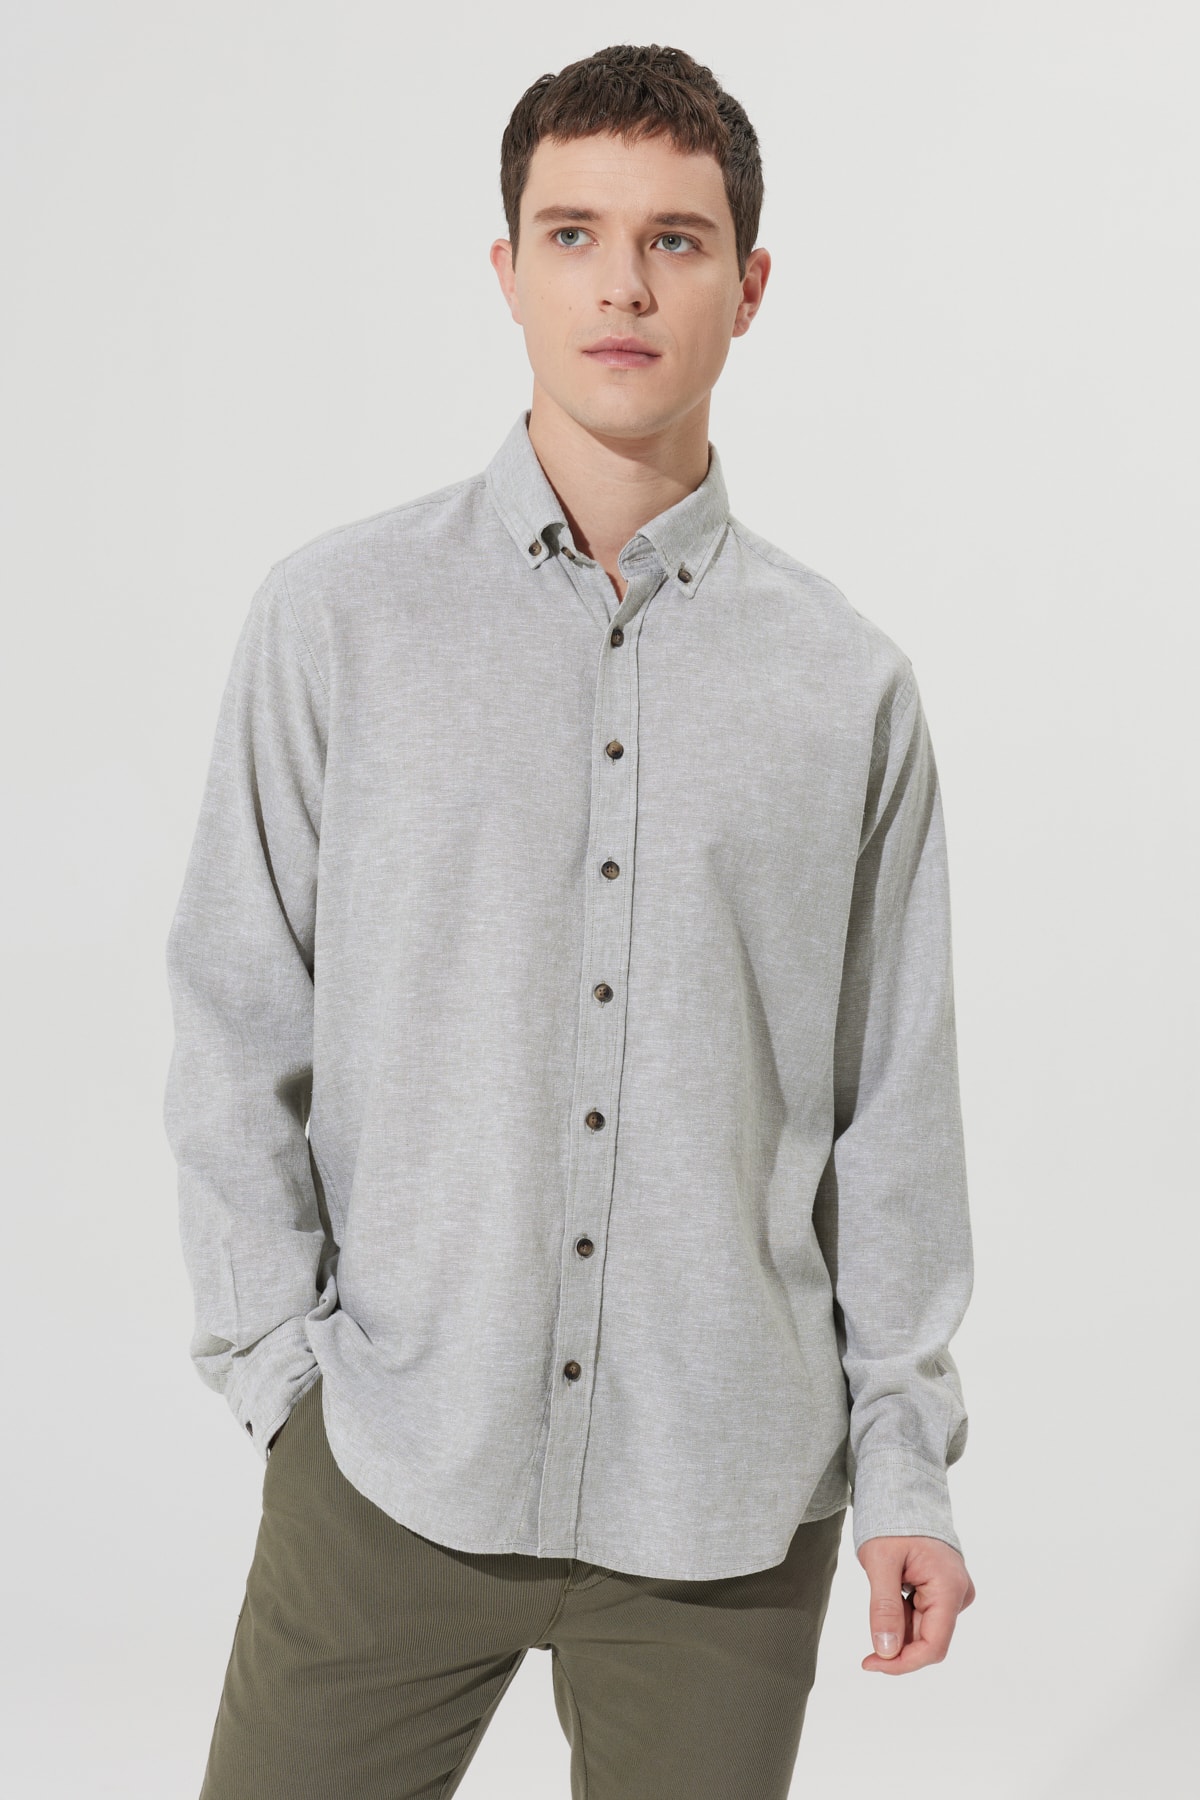 Levně ALTINYILDIZ CLASSICS Men's Khaki Comfort Fit Comfy Cut Buttoned Collar Linen Shirt.